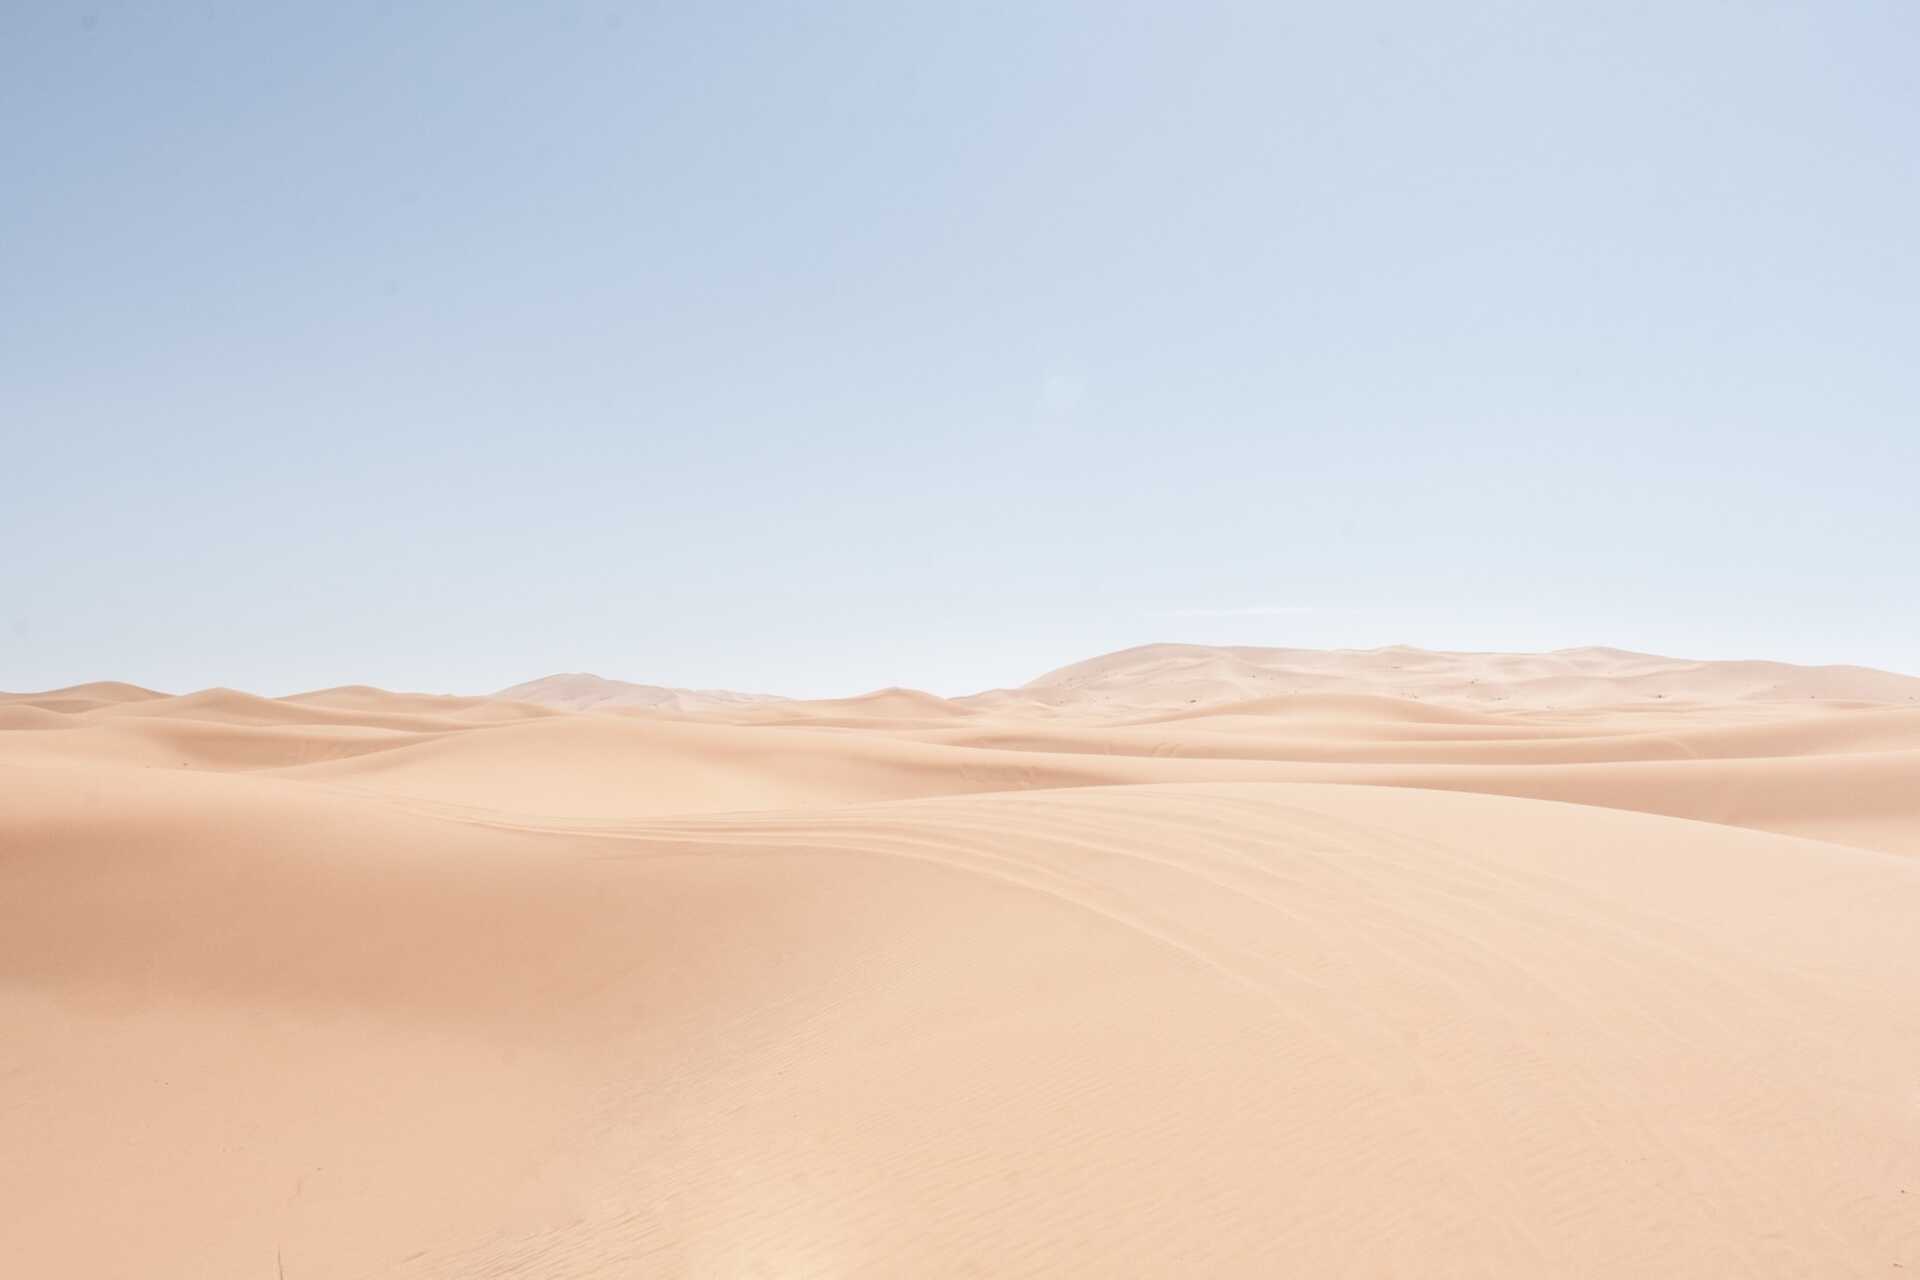 Sand dunes against a pale blue sky